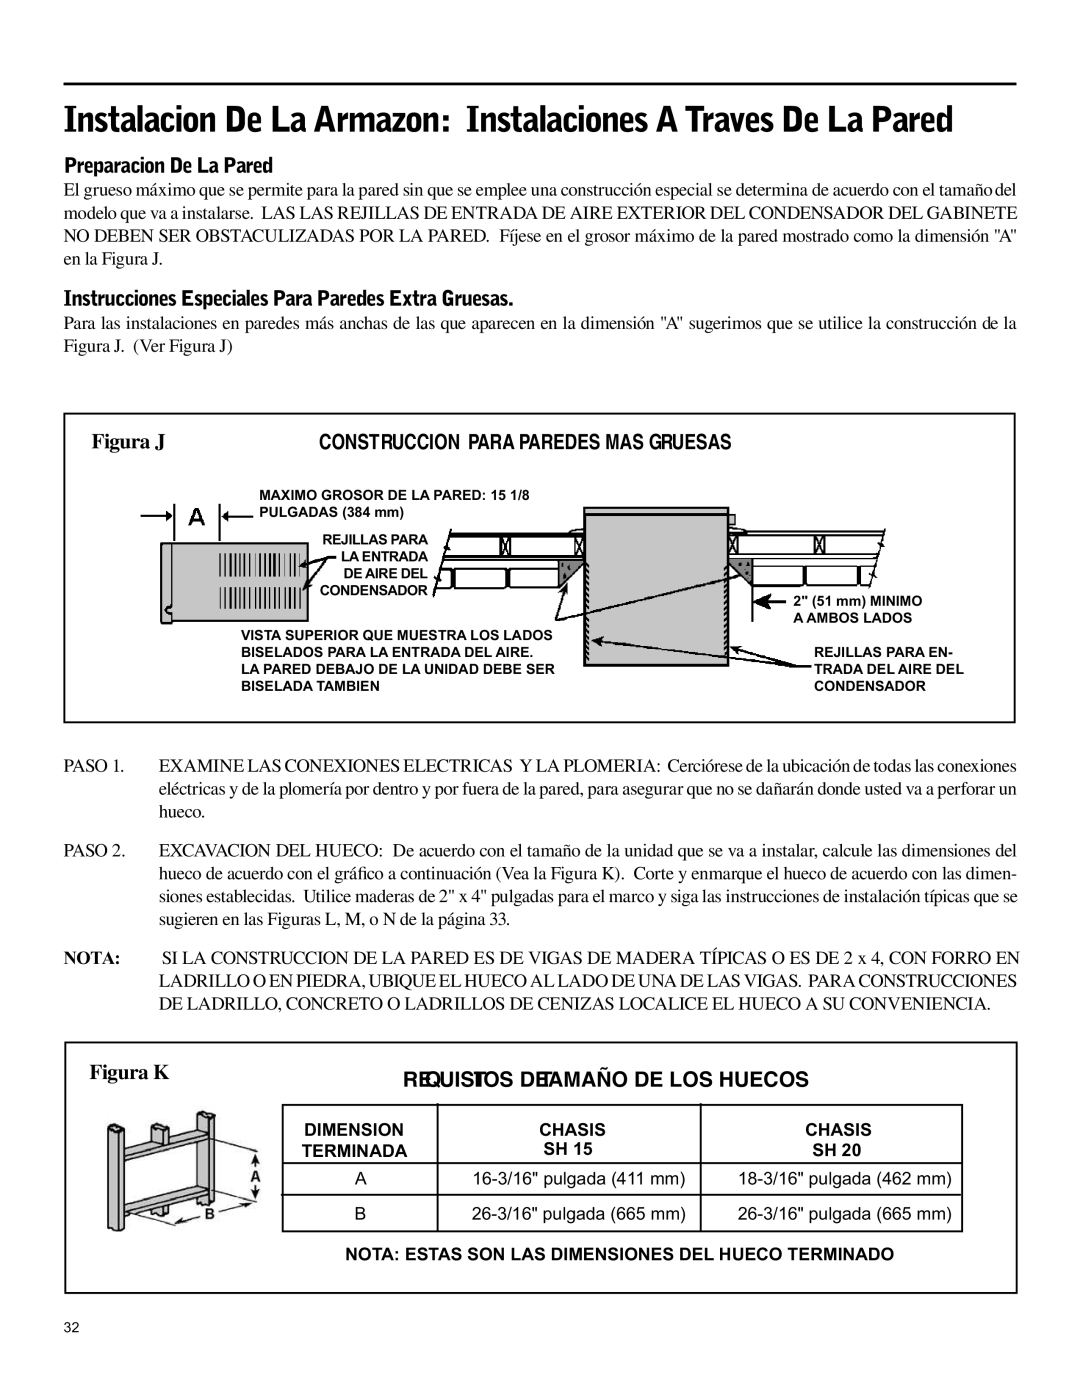 Friedrich SH15 operation manual Preparacion De La Pared, Requisitos Detamaño De Los Huecos 